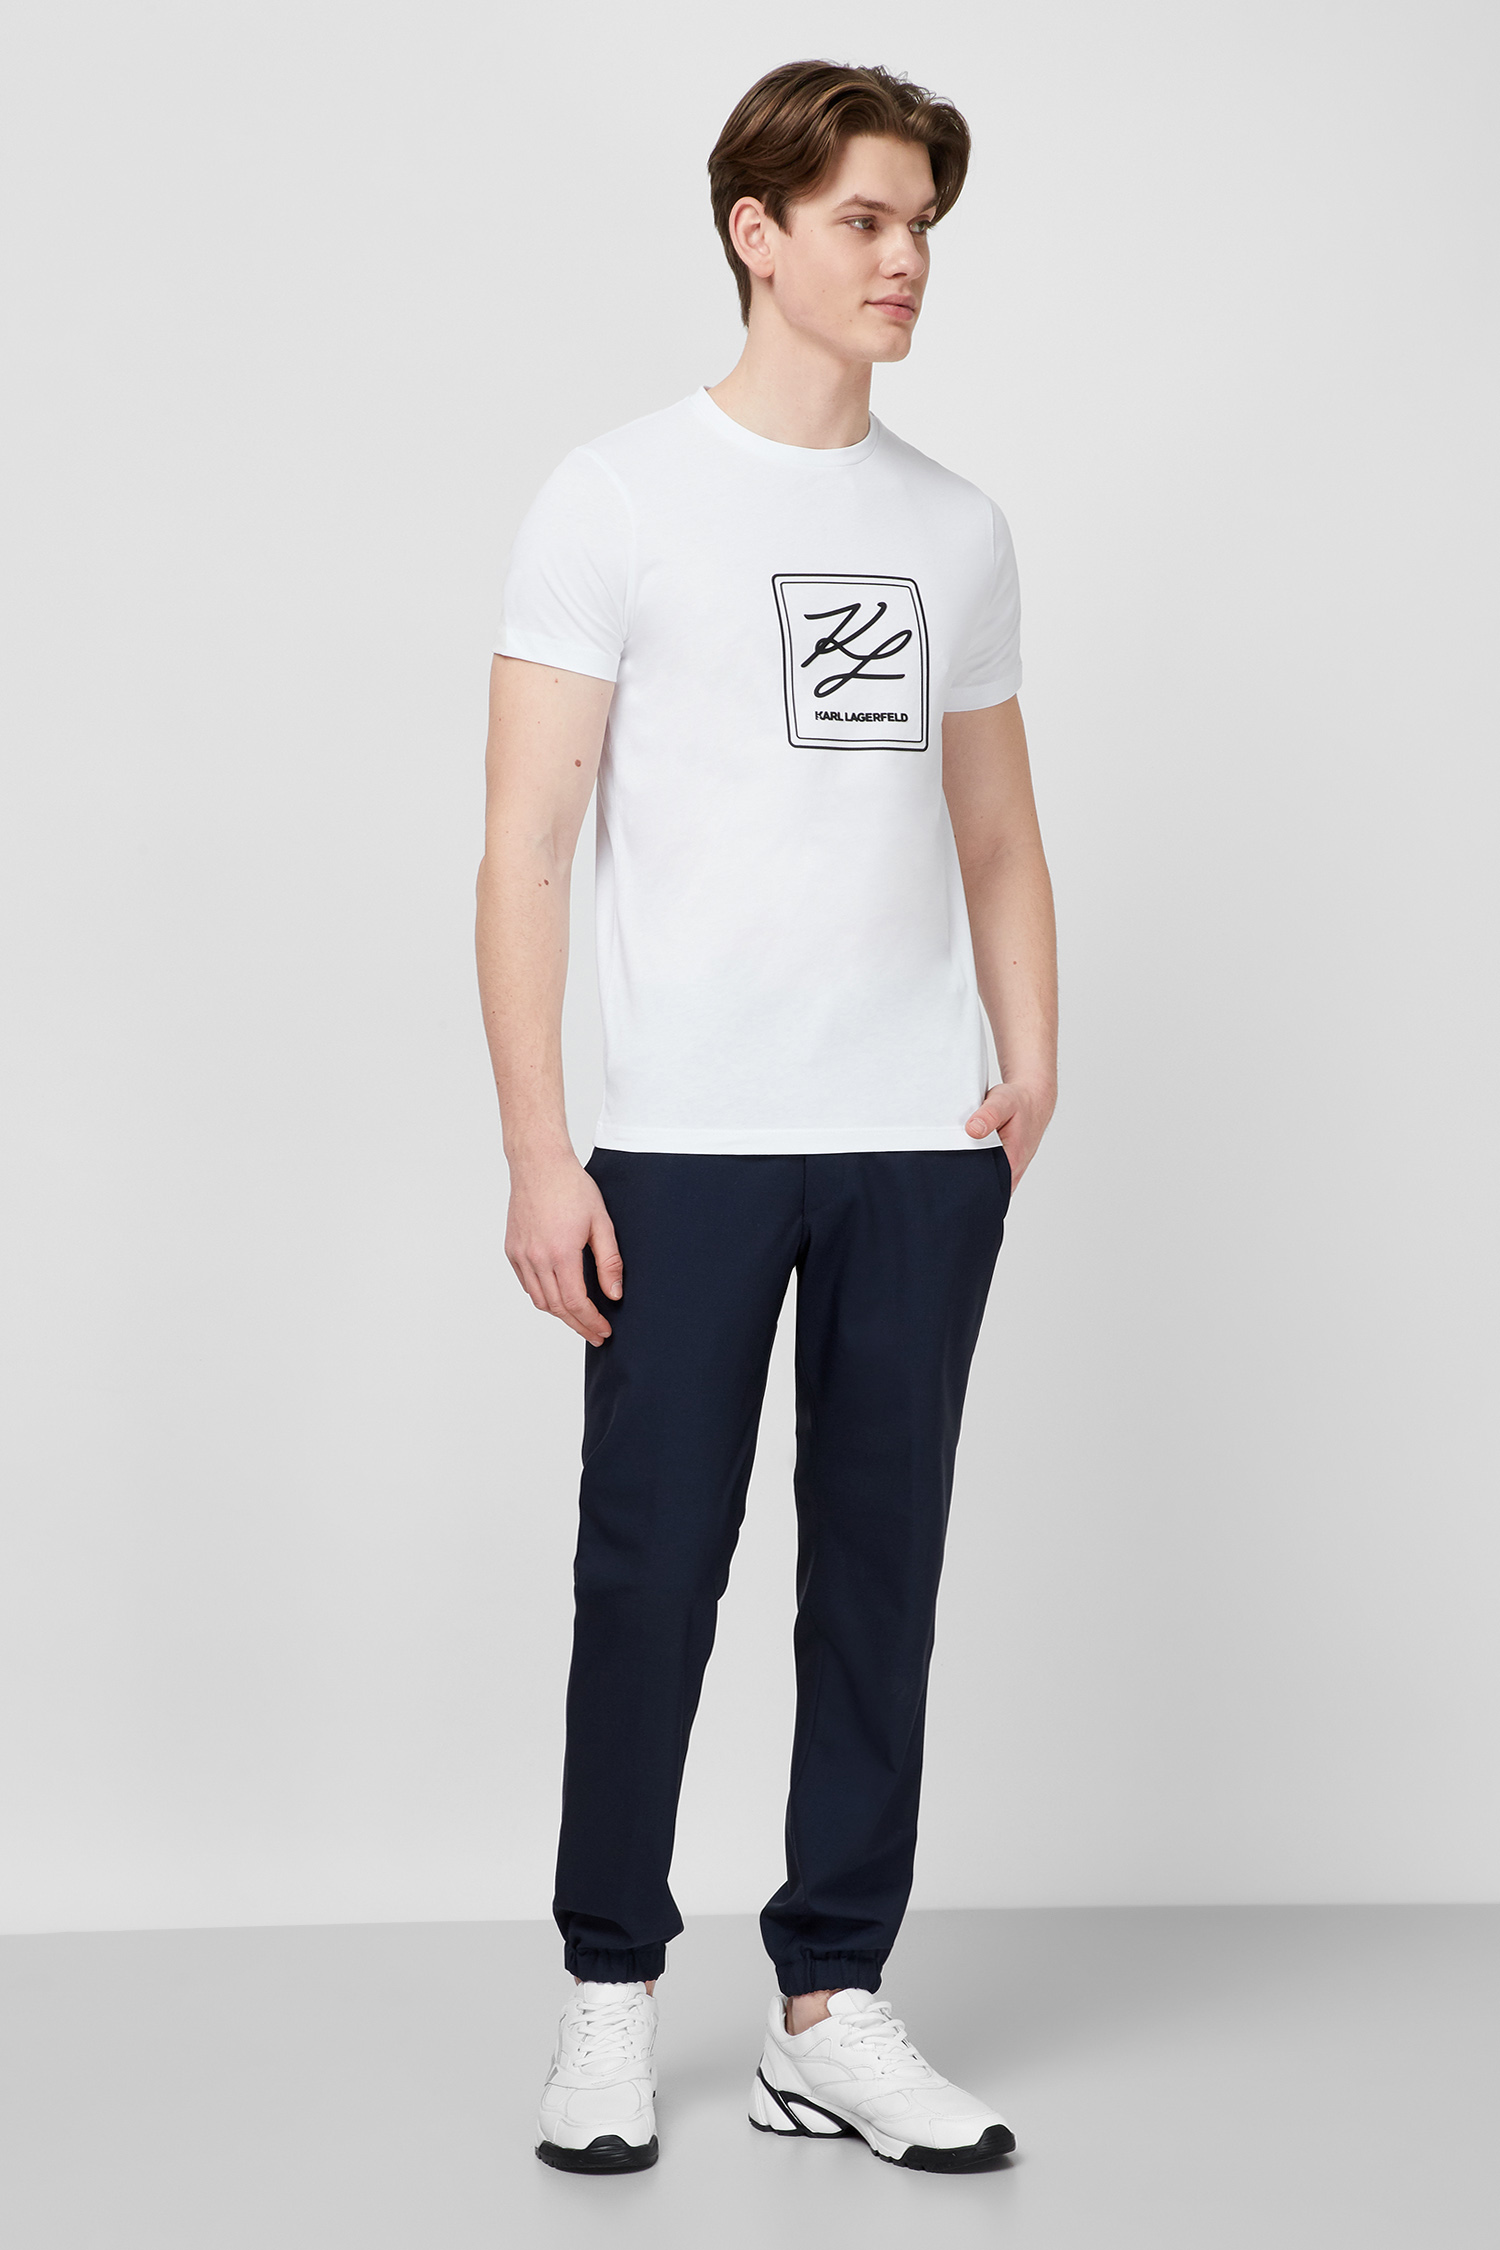 Біла футболка для хлопців Karl Lagerfeld 511224.755041;10